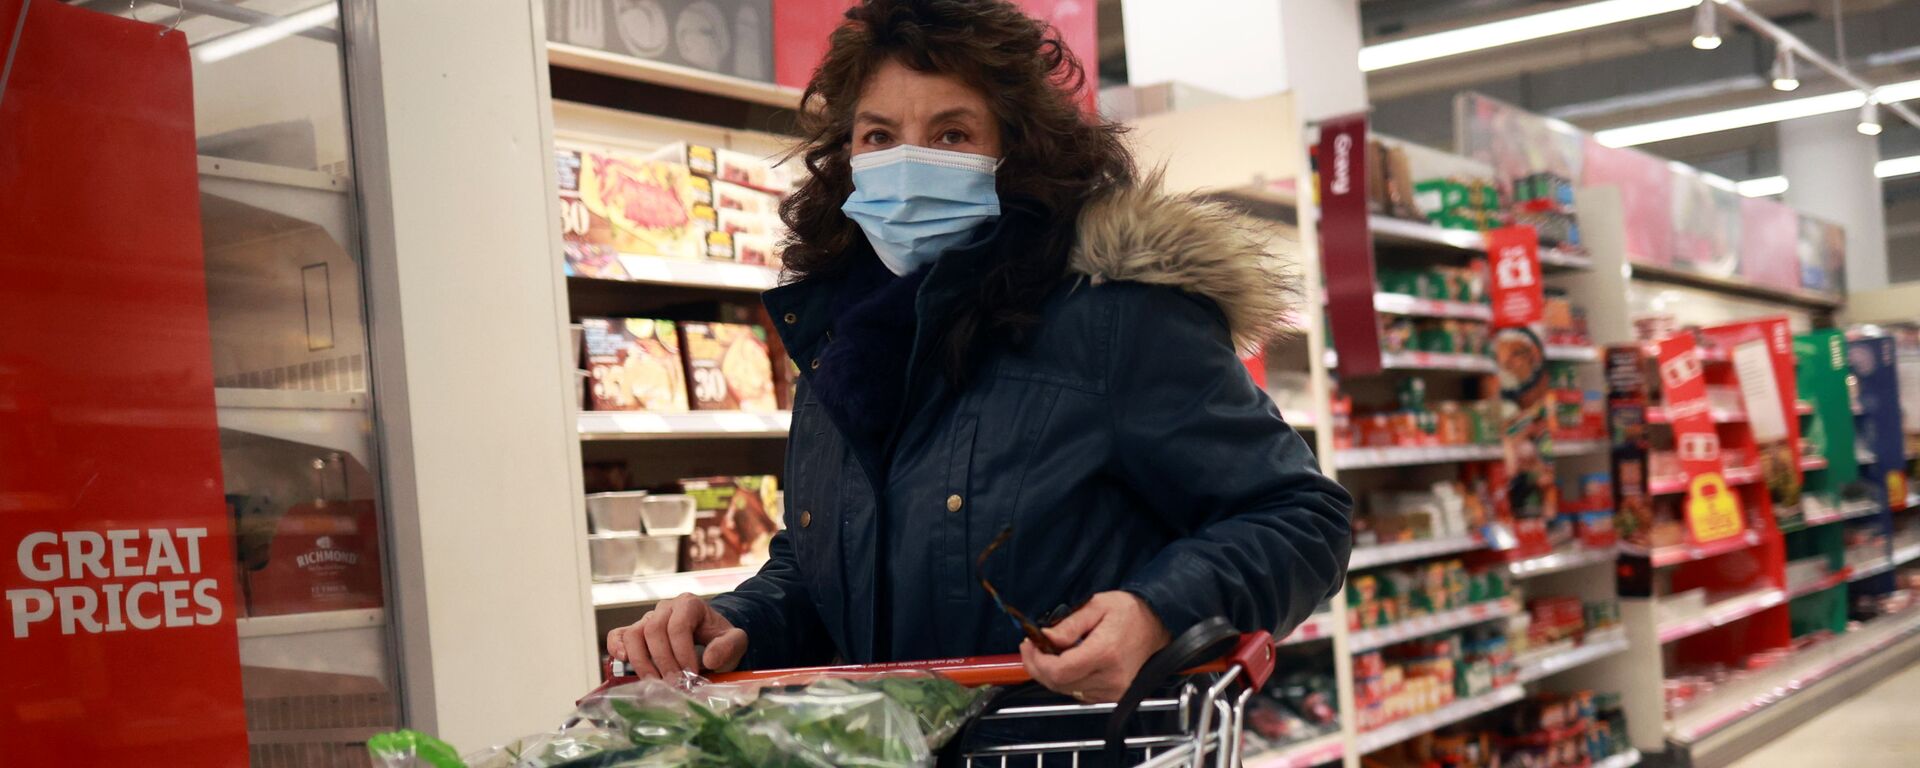 Женщина в защитной маске в супермаркете - Sputnik Latvija, 1920, 13.02.2021